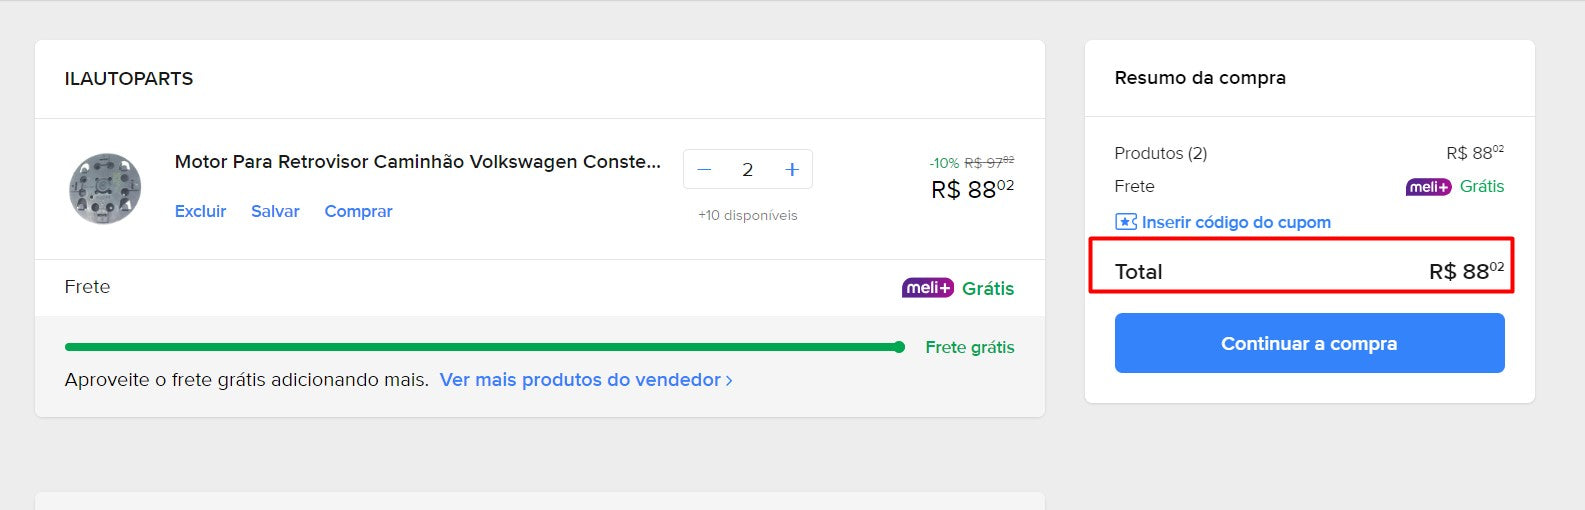 المتسوق الشخصي | الشراء من البرازيل - البيع المسبق لـ LUGIA (ESTAMPA COSTAS) - عنصر واحد - DDP